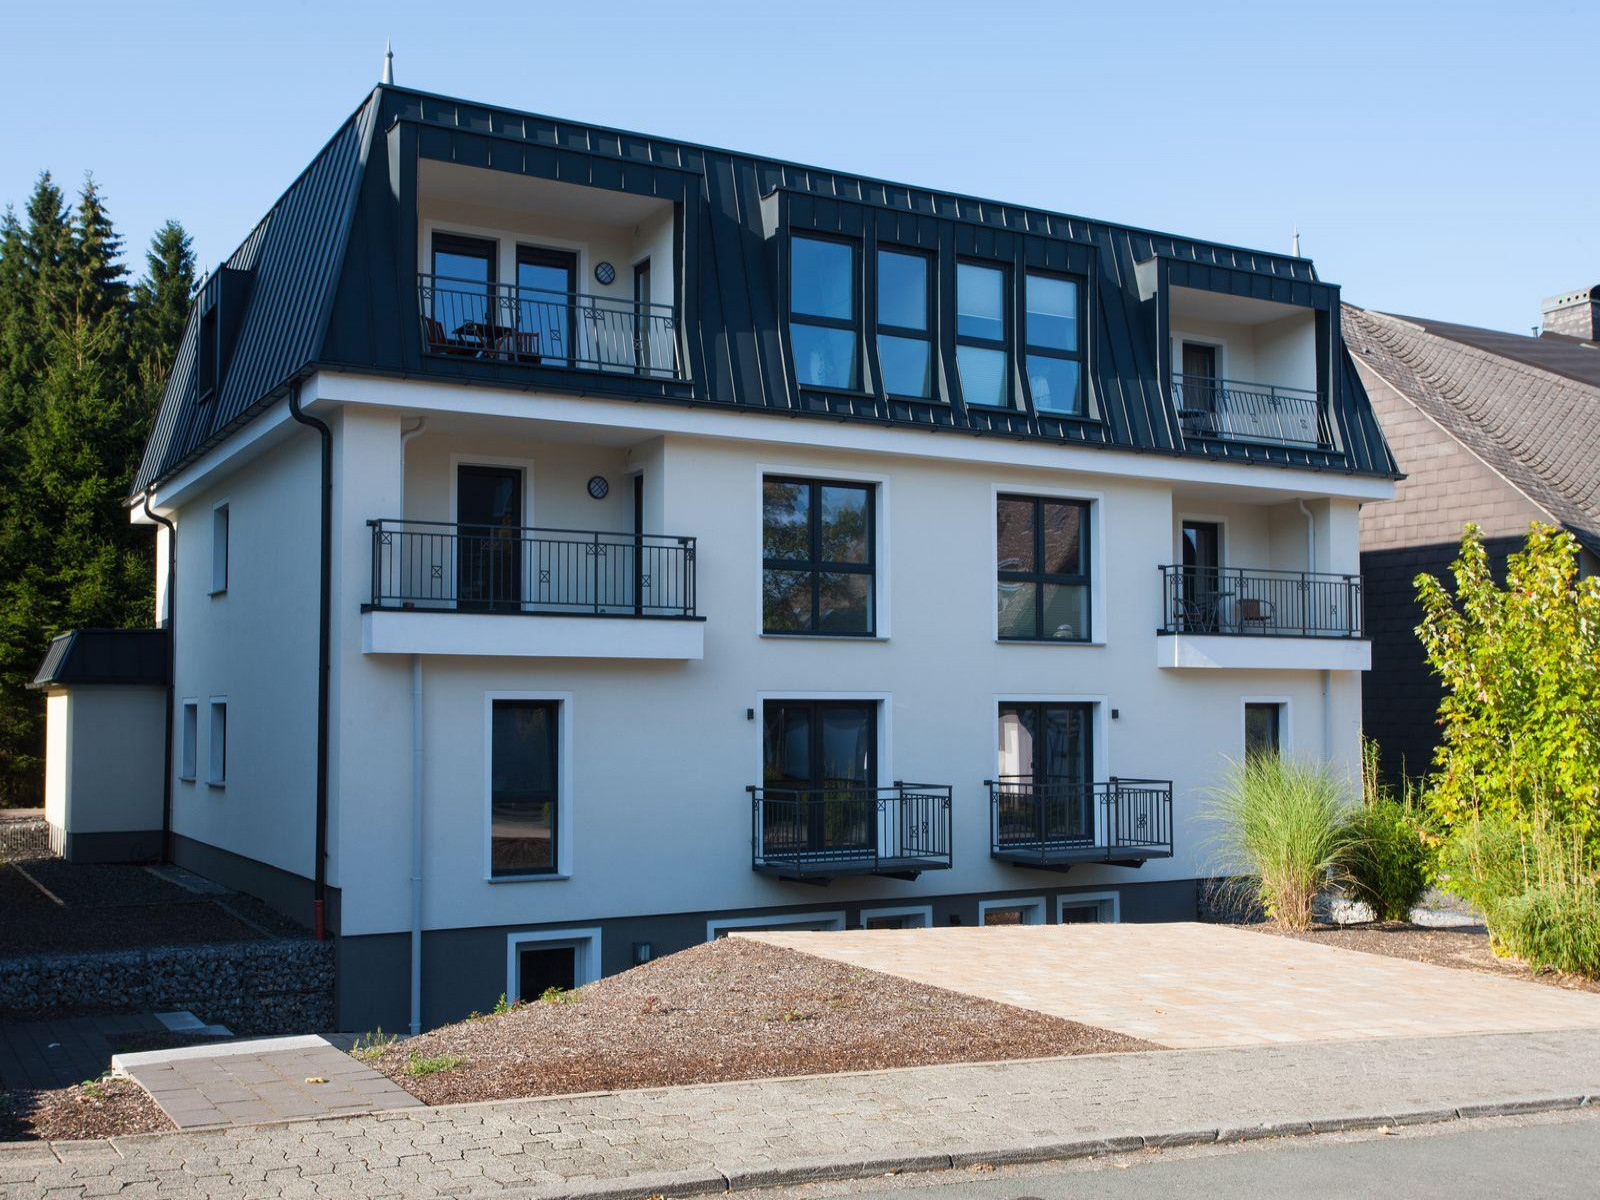 Heerlijkehuisjes.nl Zeer luxe 4 persoons vakantieappartement in Winterberg - Duitsland - Europa - Winterberg